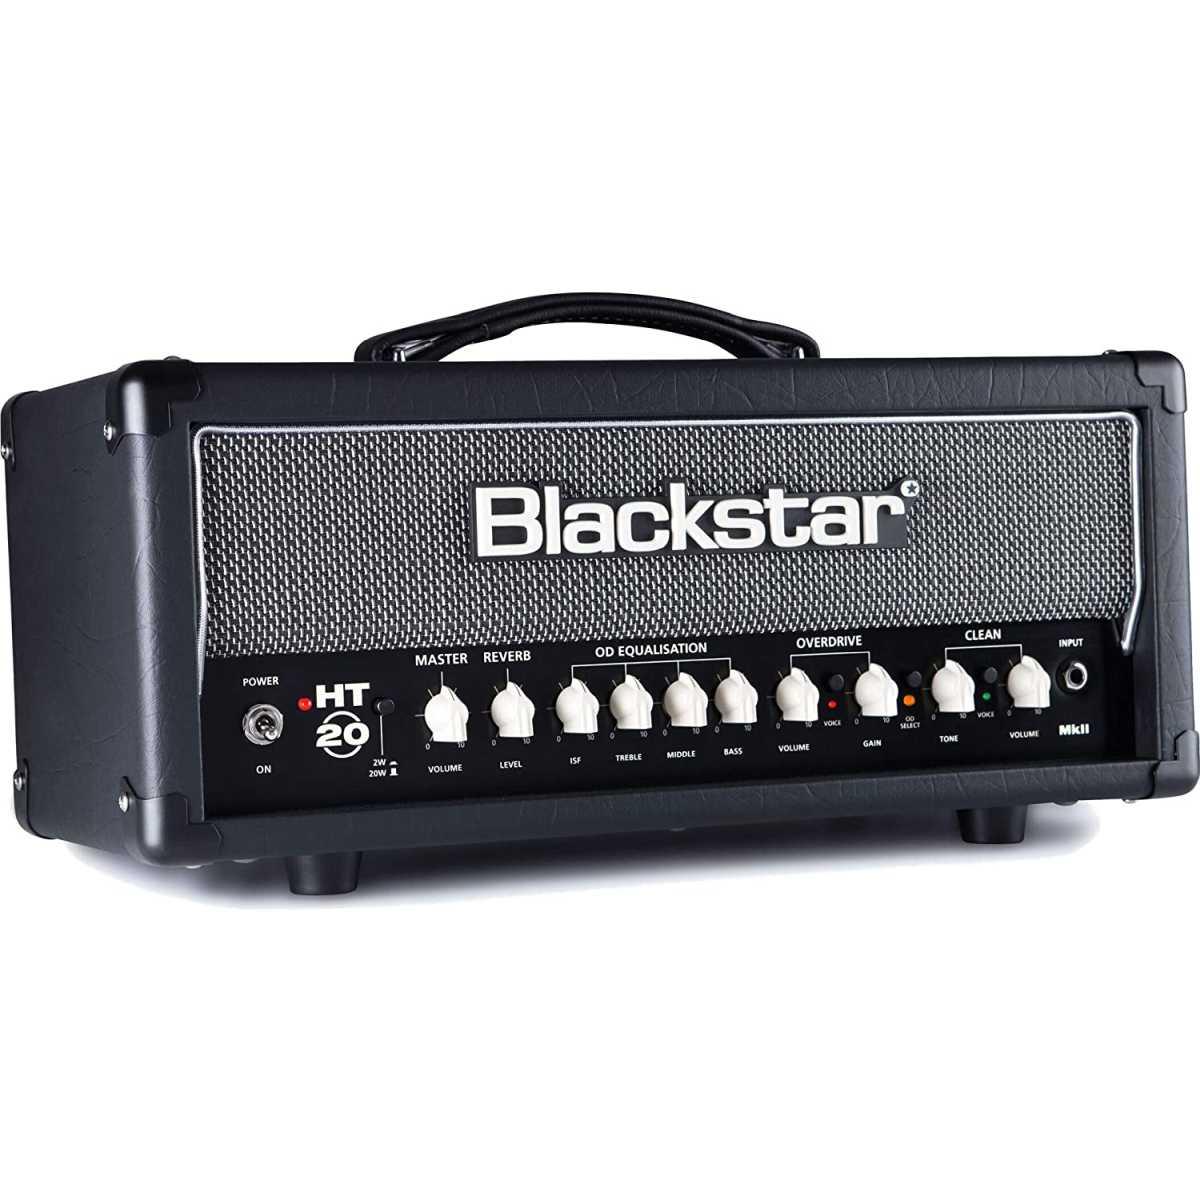 Blackstar ht20rh mkii testata per chitarra 20w